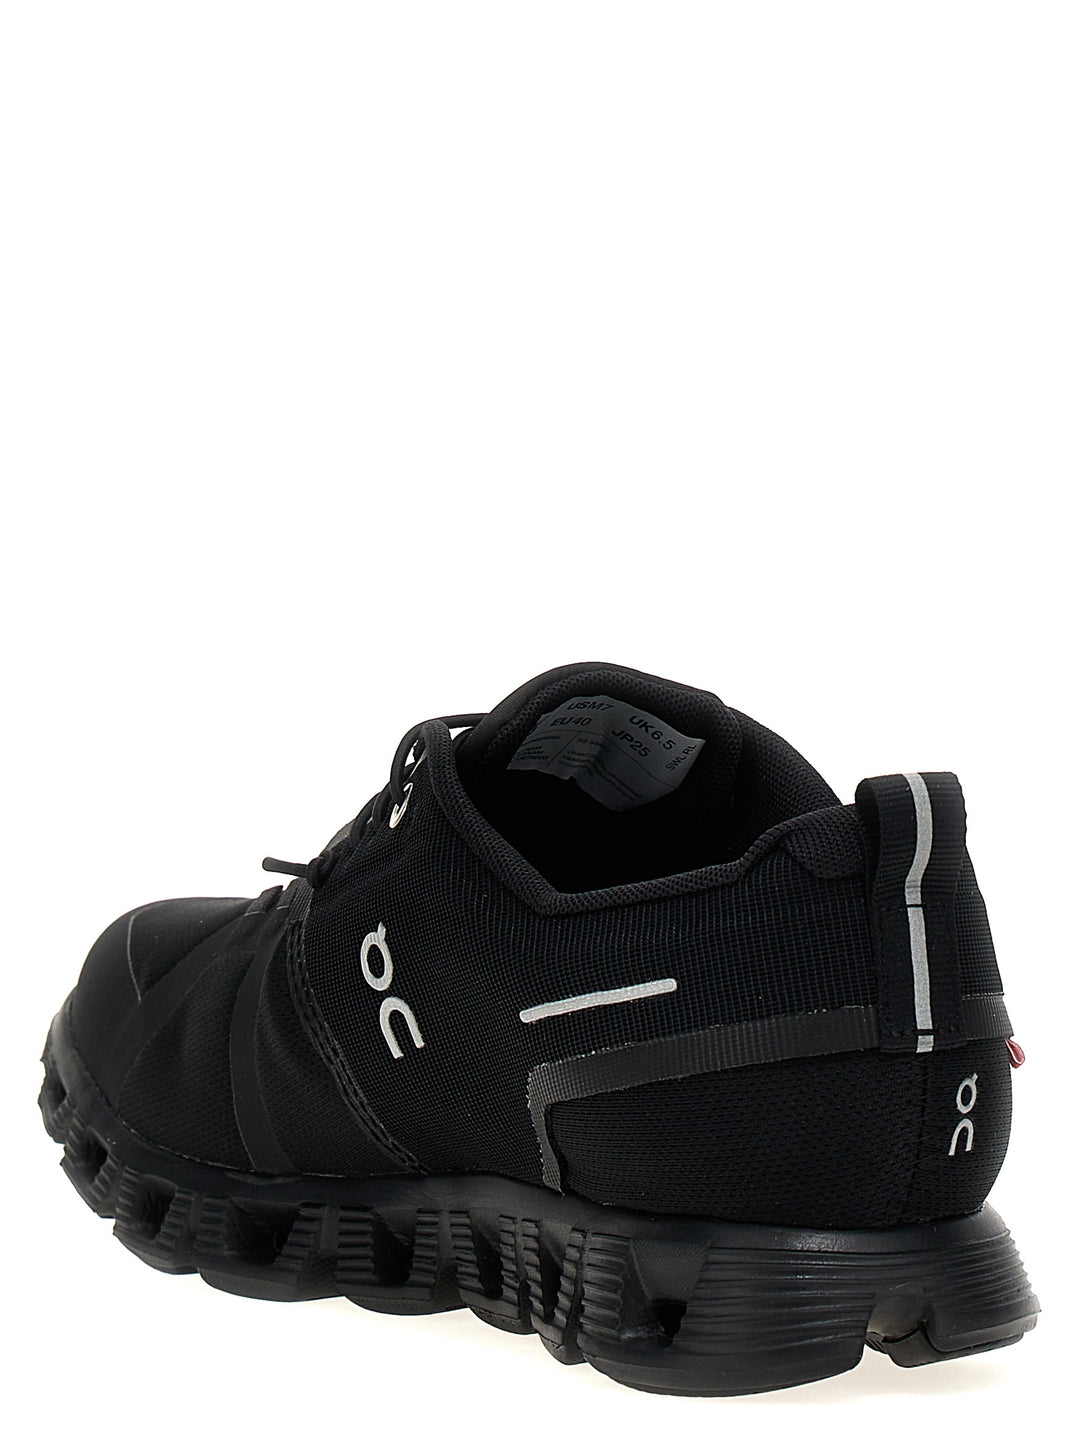 Cloud 5 Waterproof Sneakers Nero